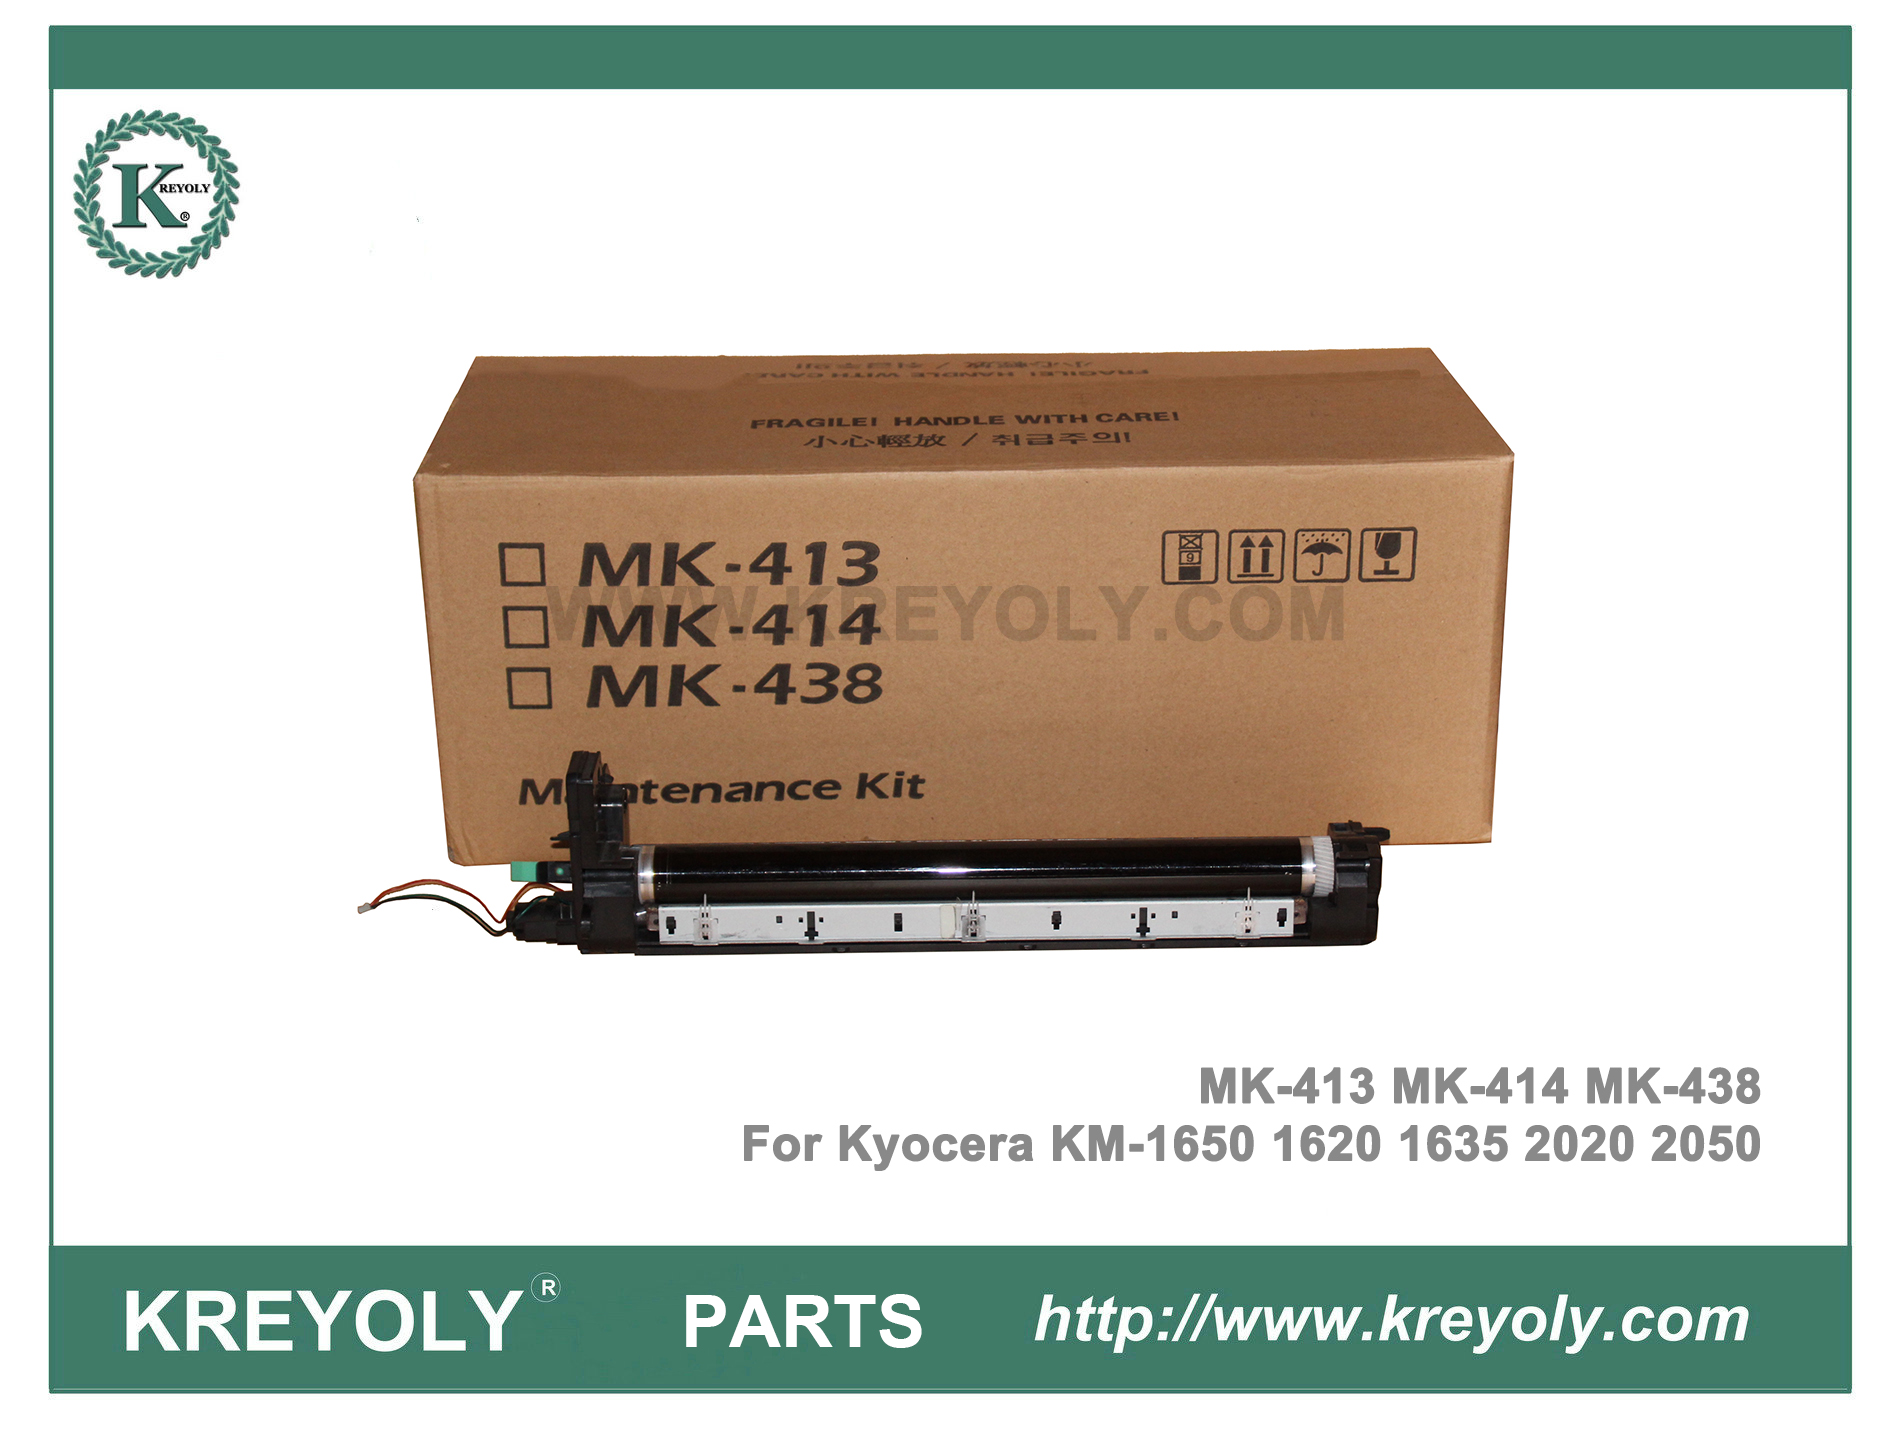 MK-413 MK-414 MK-438 Unidad de tambor para Kyocera KM1620 1635 1650 2020 2035 2050 Kit de mantenimiento